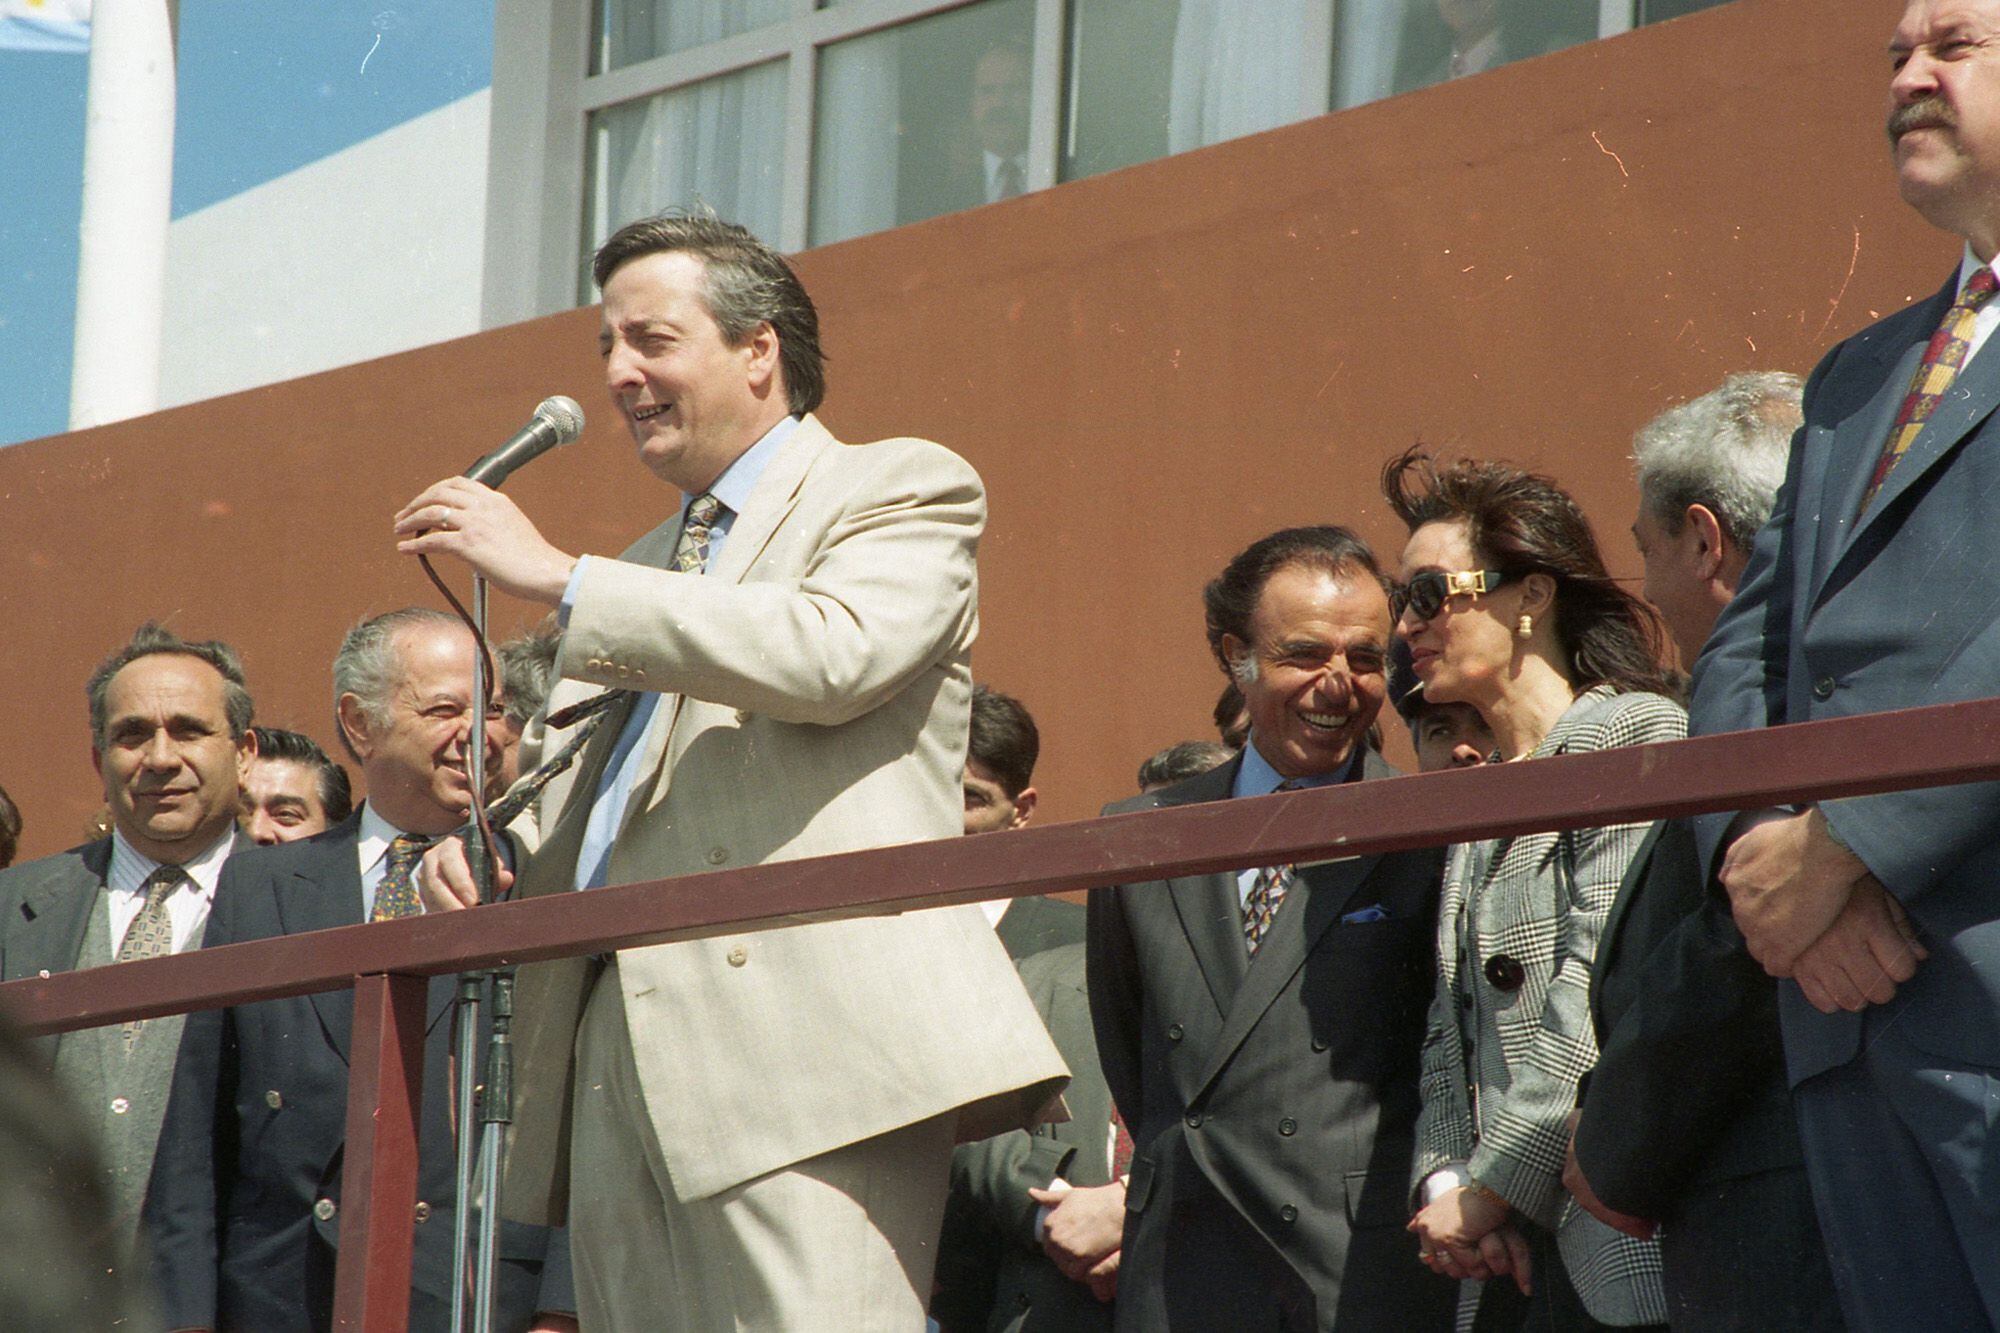 Néstor Kirchner (gobernador) inaugura el Hospital Regional junto a Carlos Menem y Cristina Kirchner, en Río Gallegos, 1995. Tres años antes, Santa Cruz había recibido US$630 millones por regalías